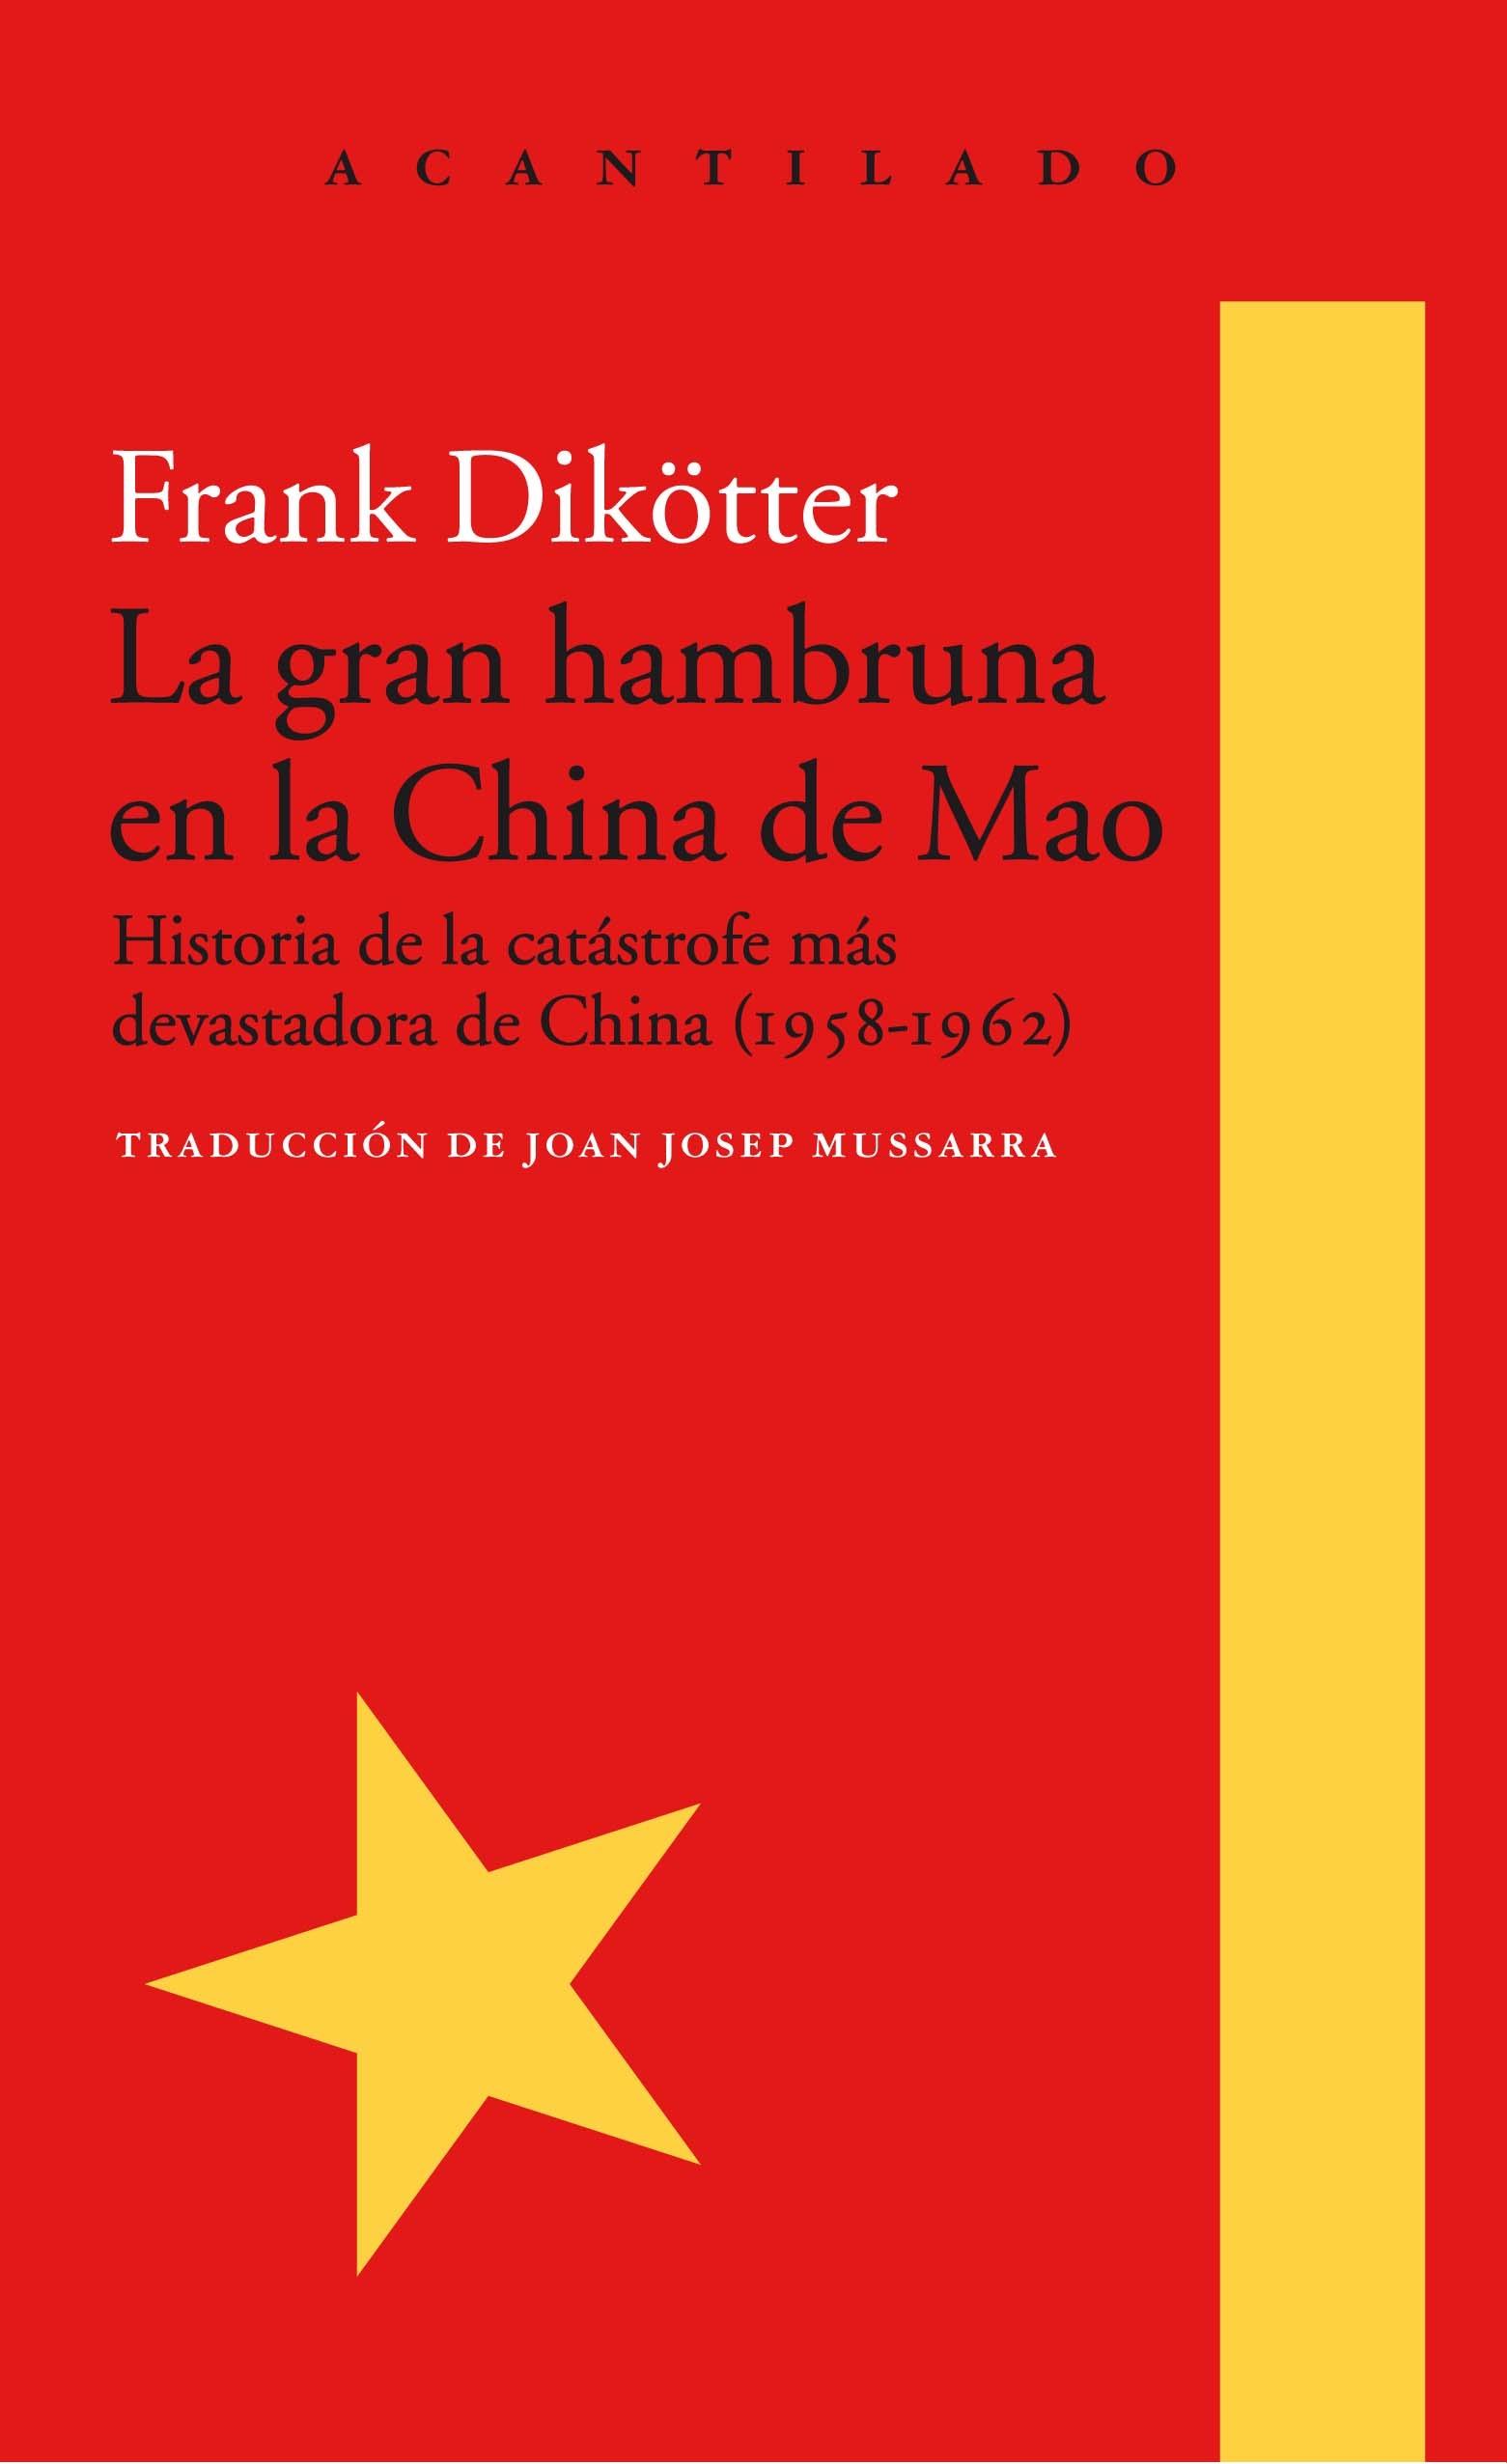 La gran hambruna en la China de Mao "Historia de la catástrofre más devastadora de China (1958-1962)"